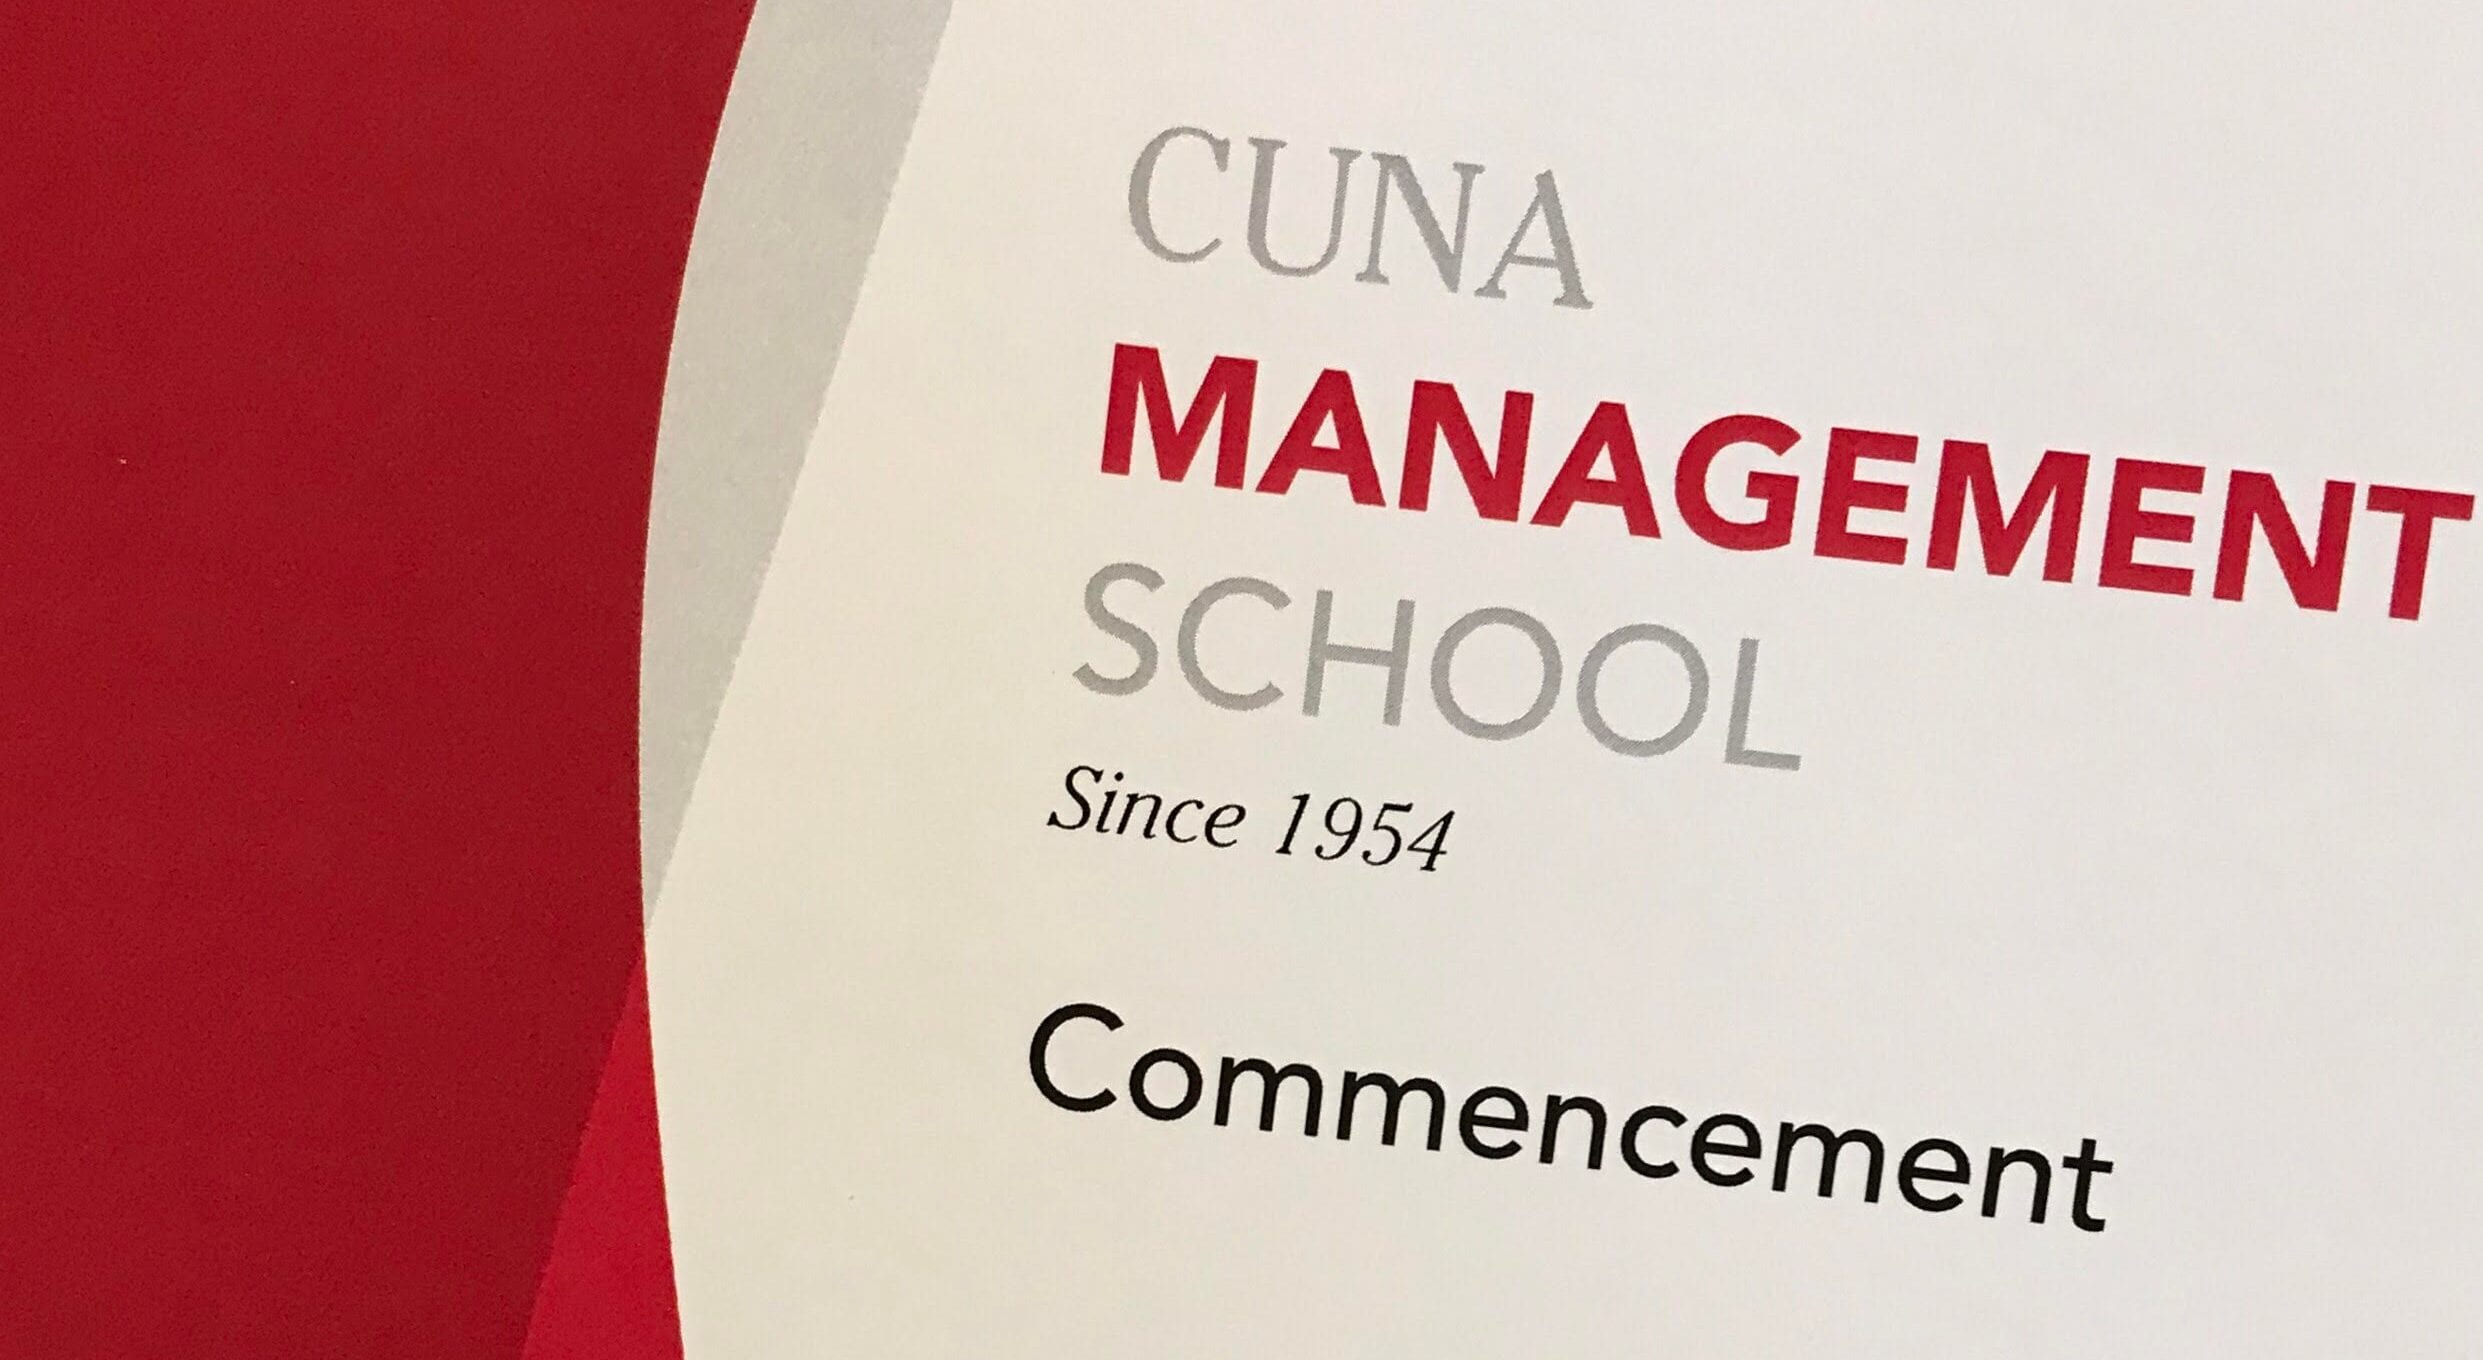 CUNA Management School Commencement program